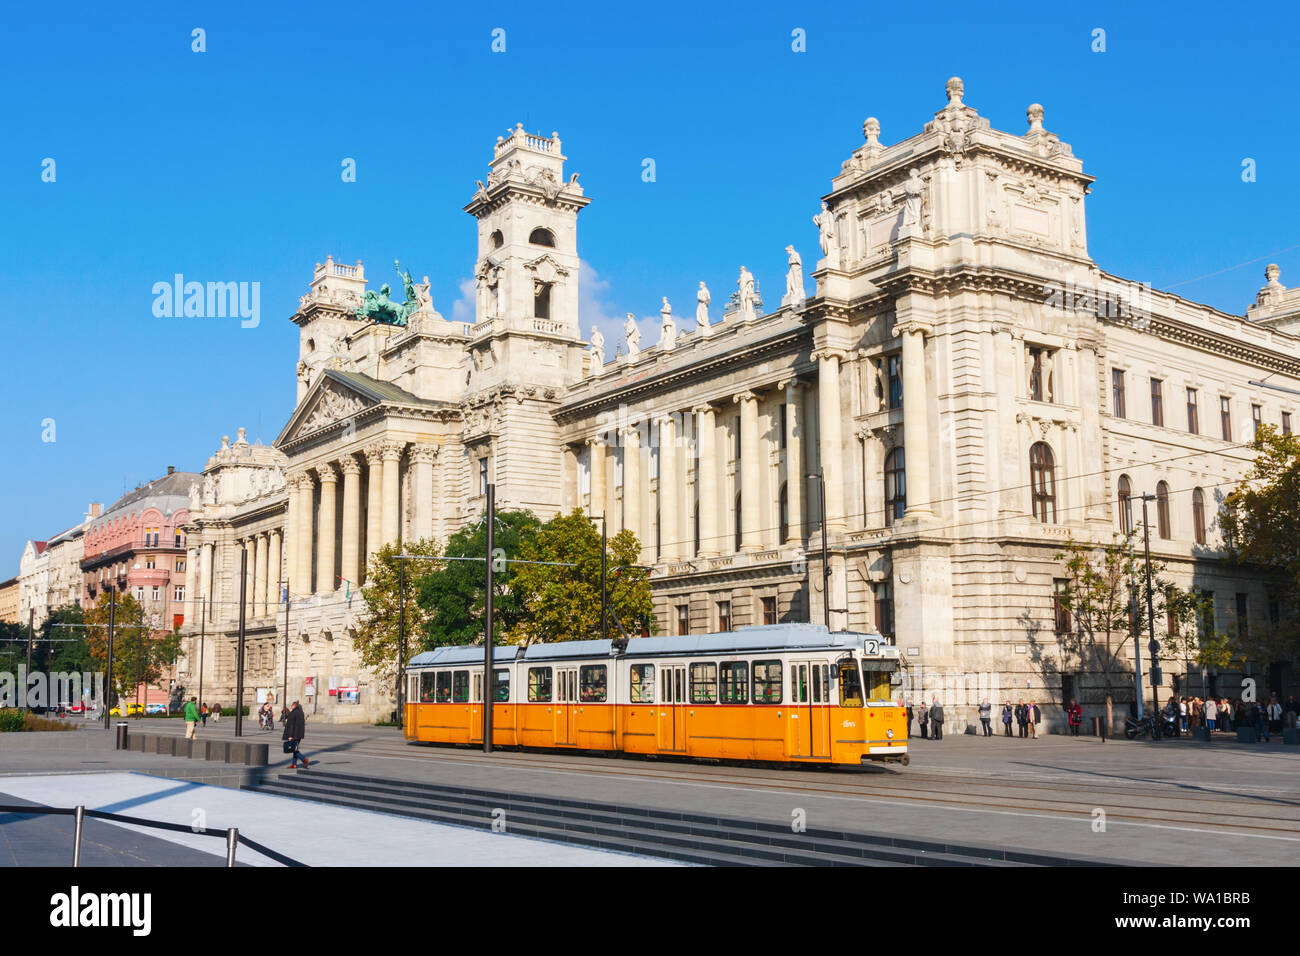 La Place Kossuth avec tram jaune et le Musée Ethnographique s'appuyant sur une terrasse bien afteroon. Budapest, Hongrie. Banque D'Images